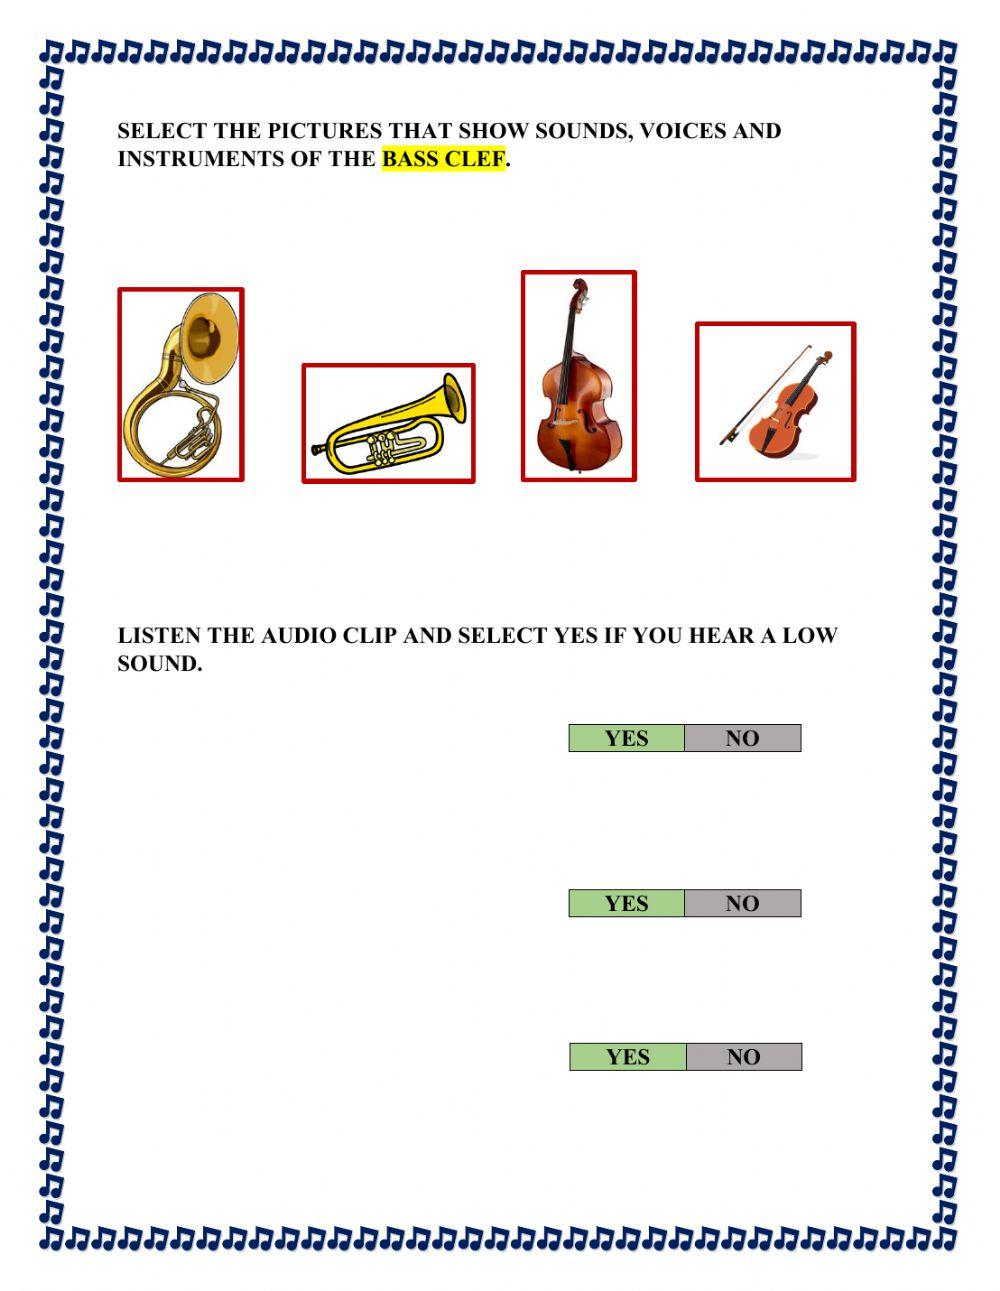 Bass clef beginners